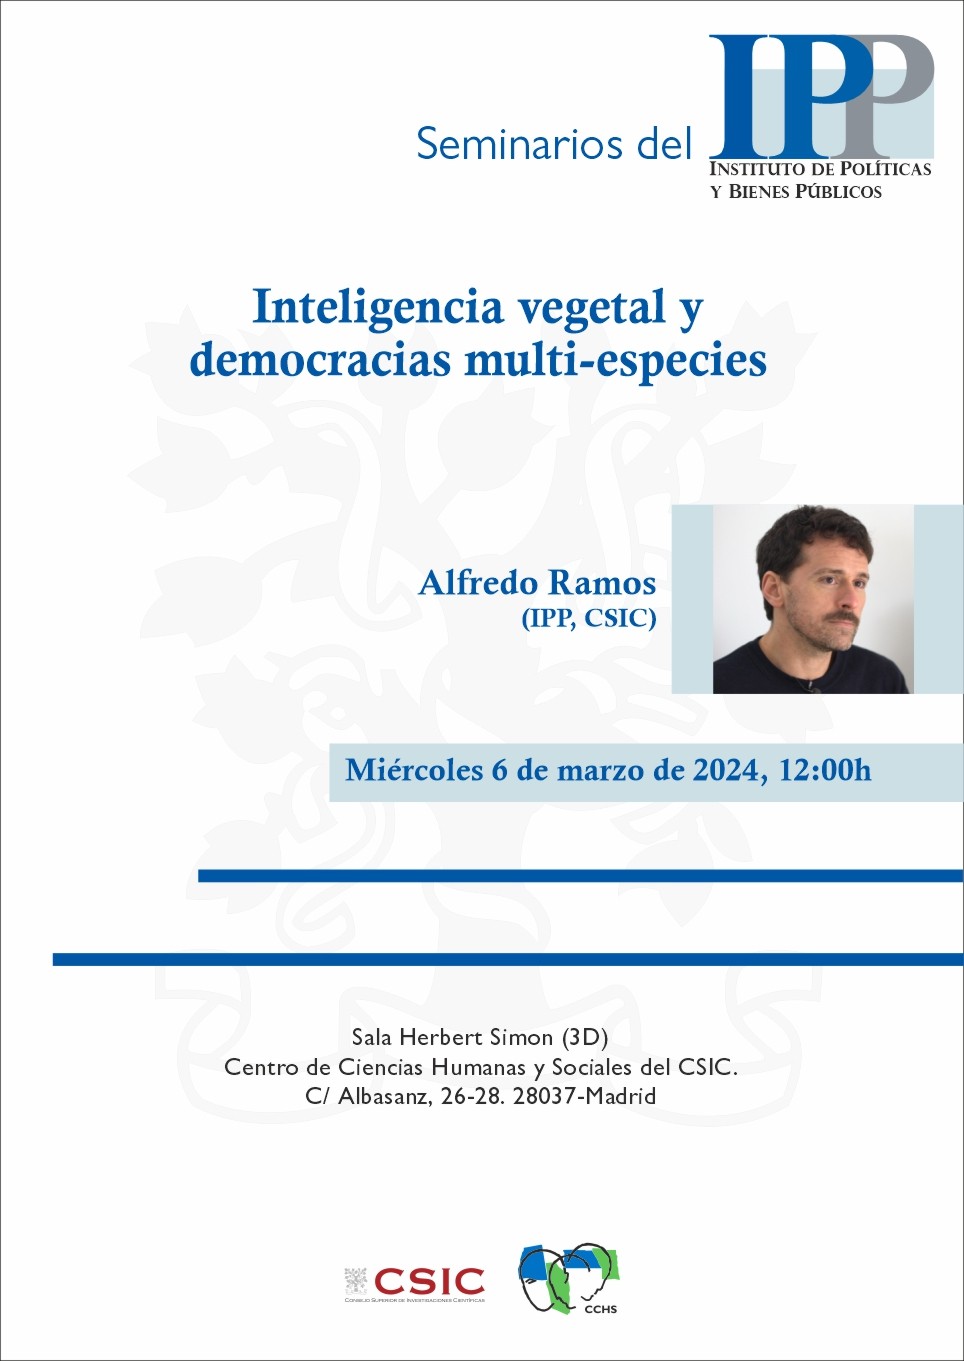 Seminarios del IPP: "Inteligencia vegetal y democracias multi-especies"